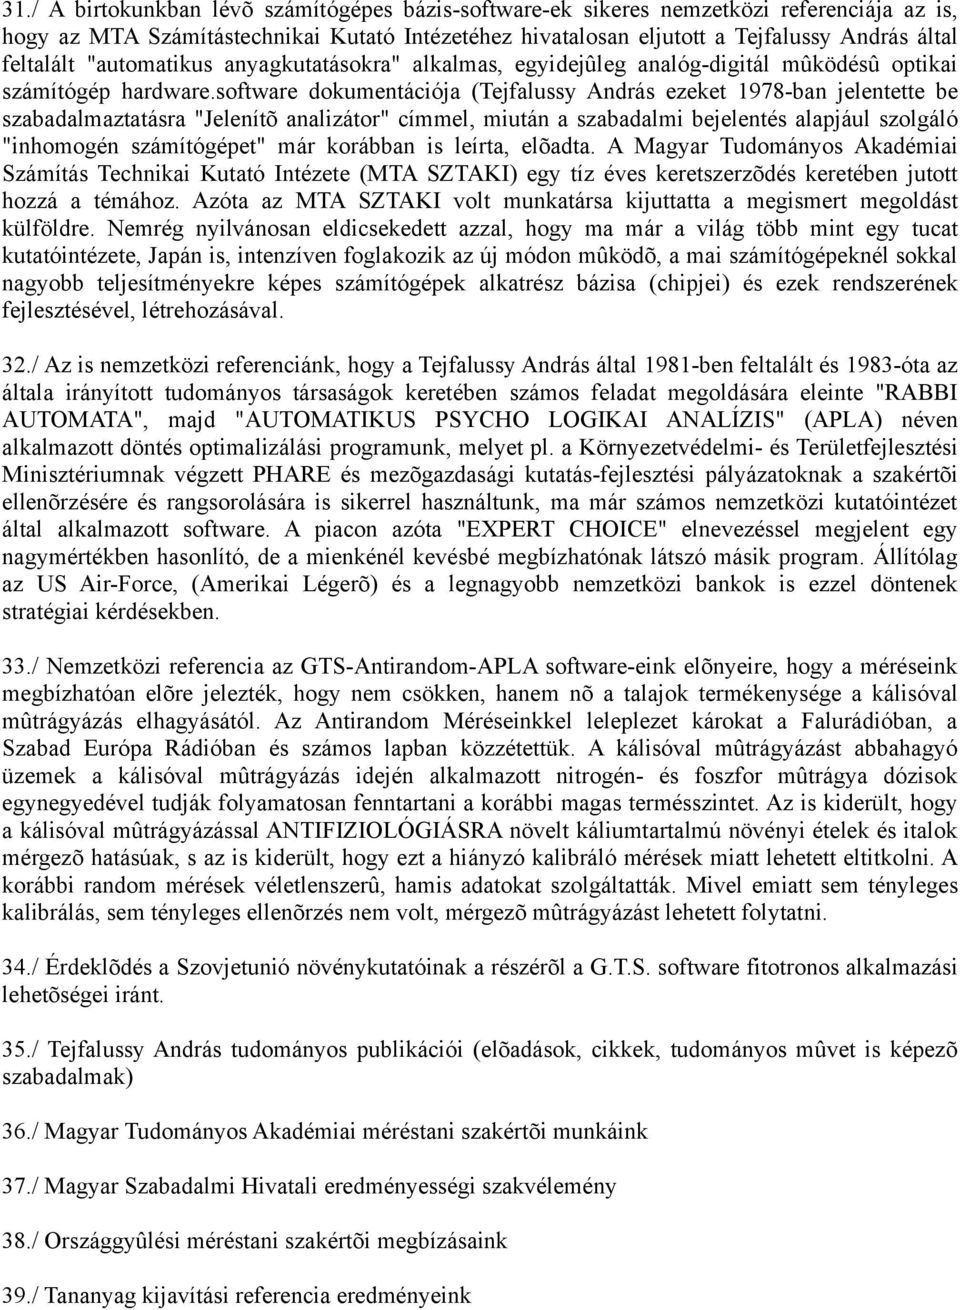 software dokumentációja (Tejfalussy András ezeket 1978-ban jelentette be szabadalmaztatásra "Jelenítõ analizátor" címmel, miután a szabadalmi bejelentés alapjául szolgáló "inhomogén számítógépet" már